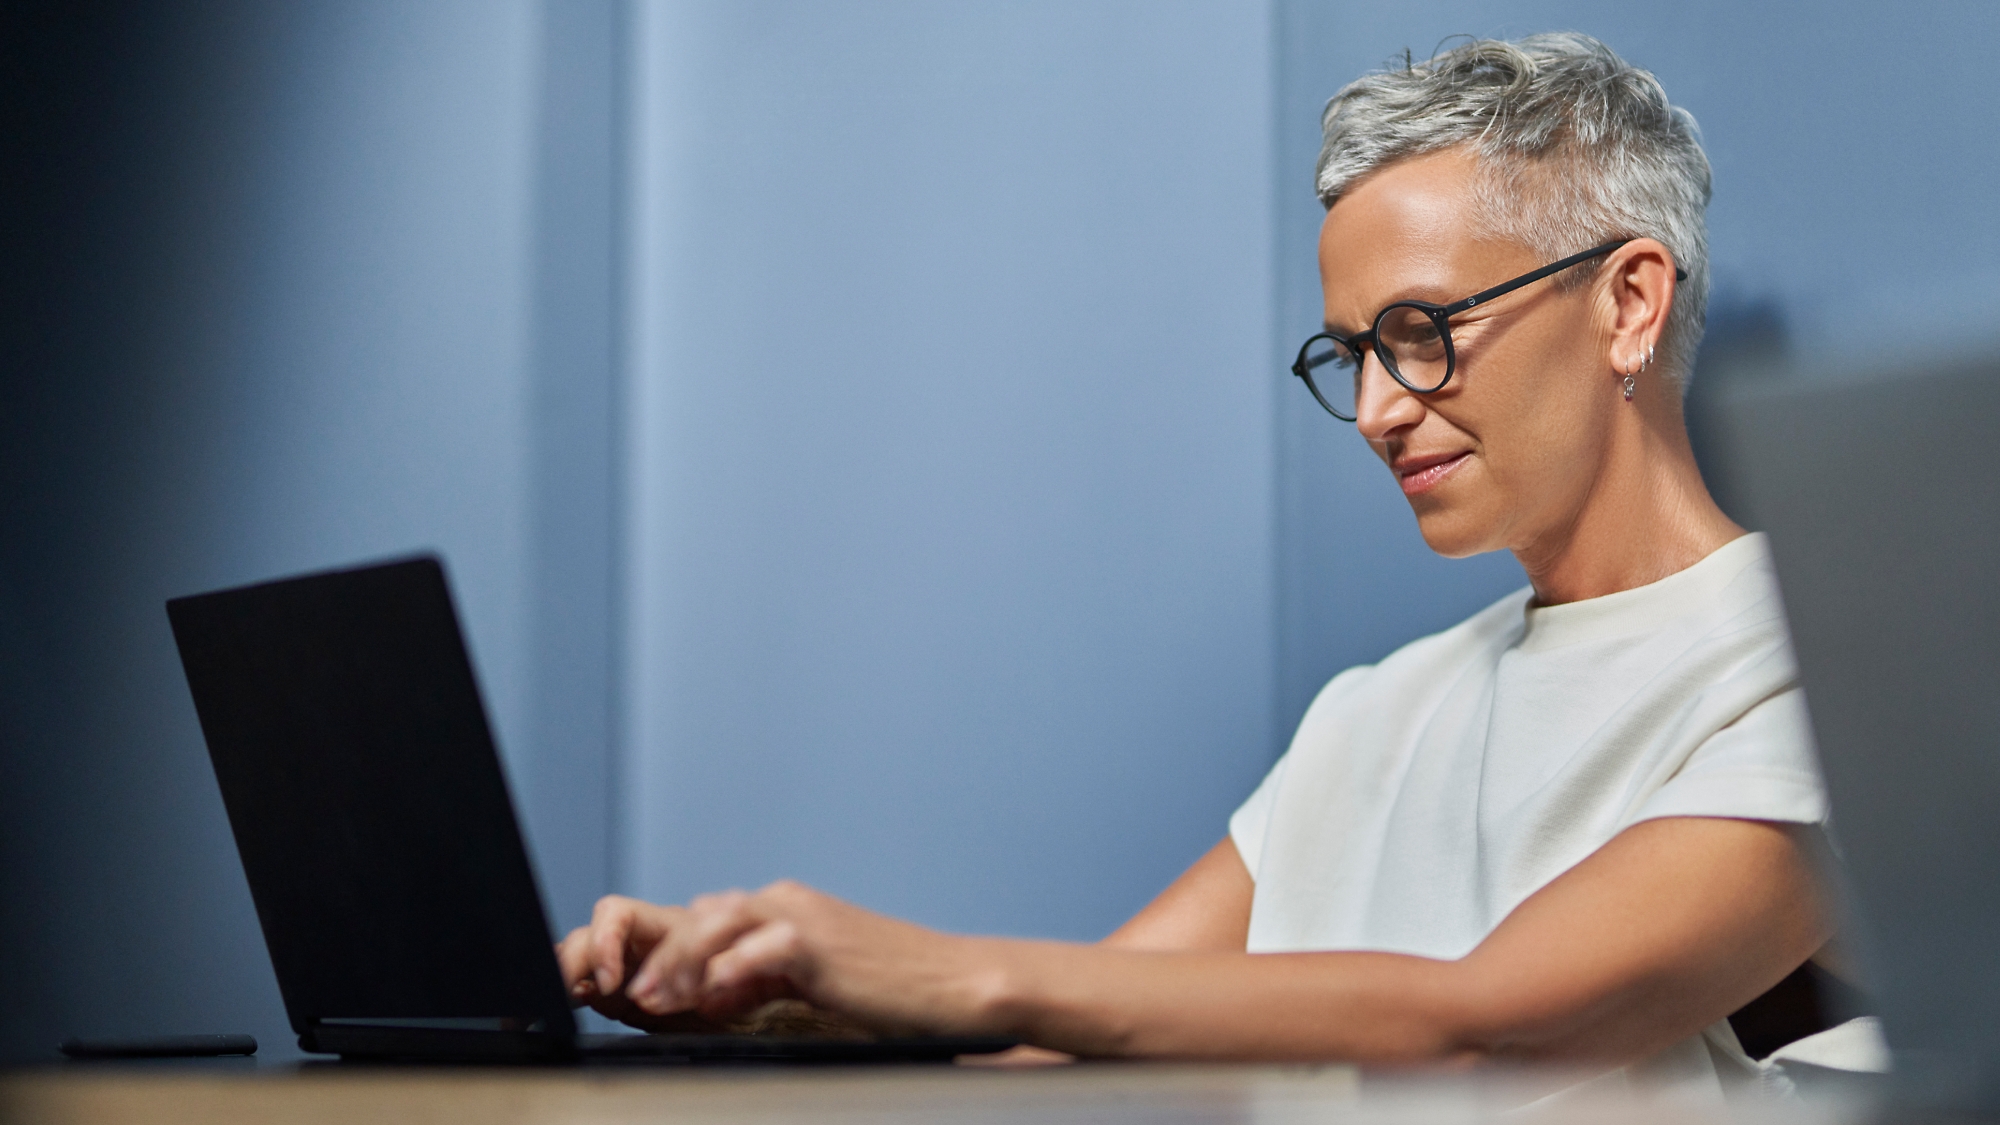 Eine reife Frau mit kurzen grauen Haaren, die lächelnd an einem Laptop in einer modernen Büroumgebung arbeitet.